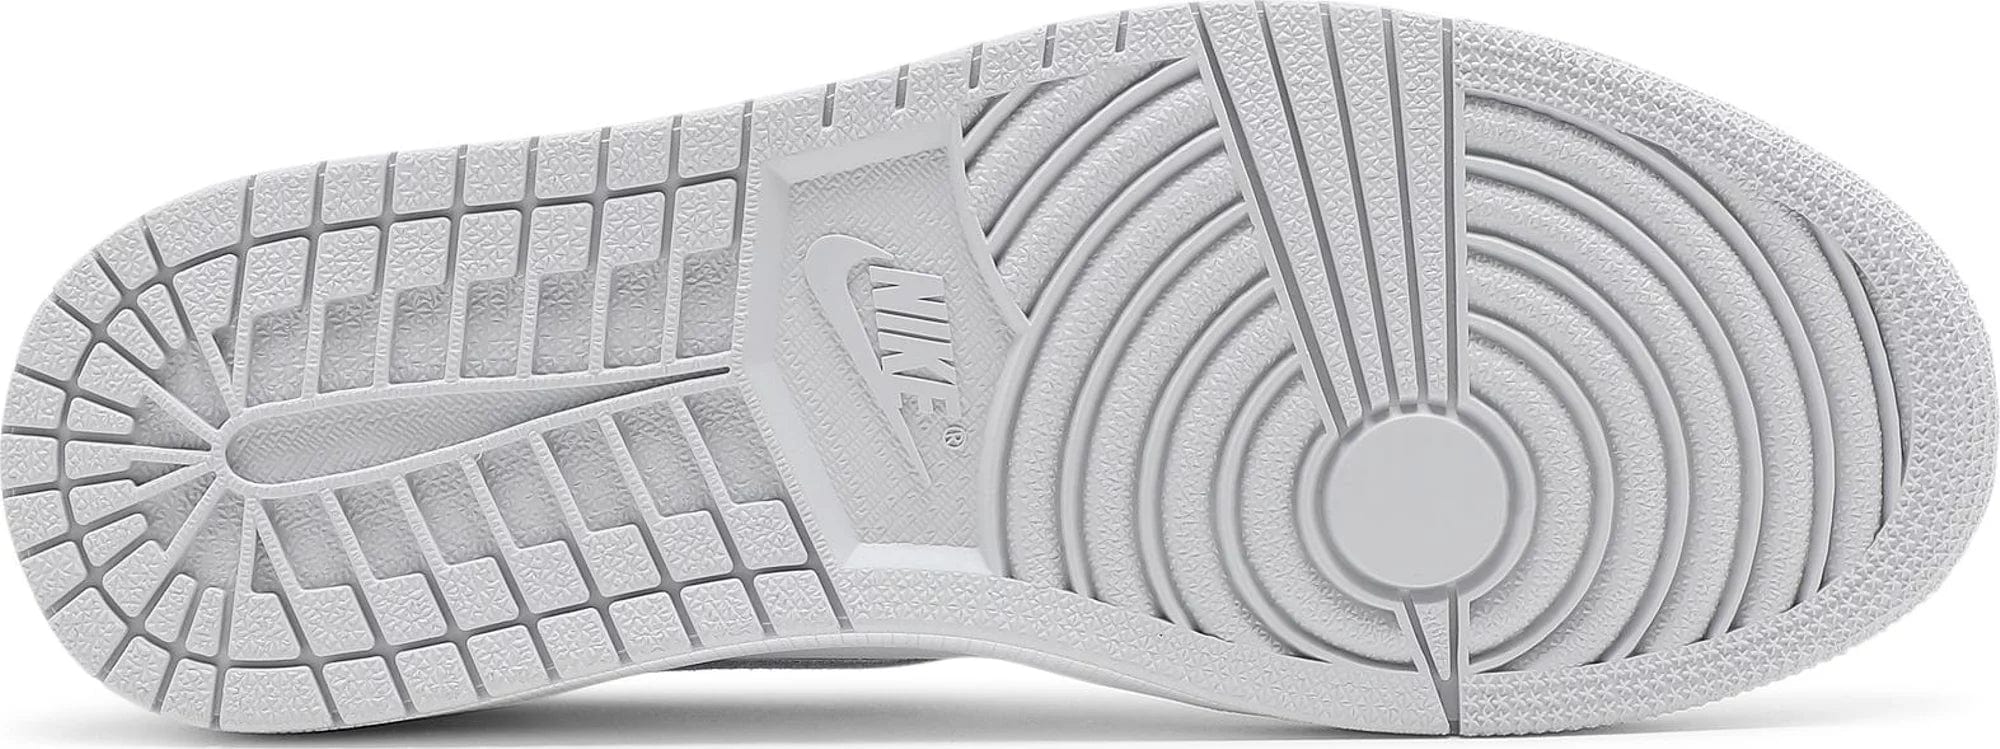 sneakers Nike Air Jordan 1 Low OG Neutral Grey Men's